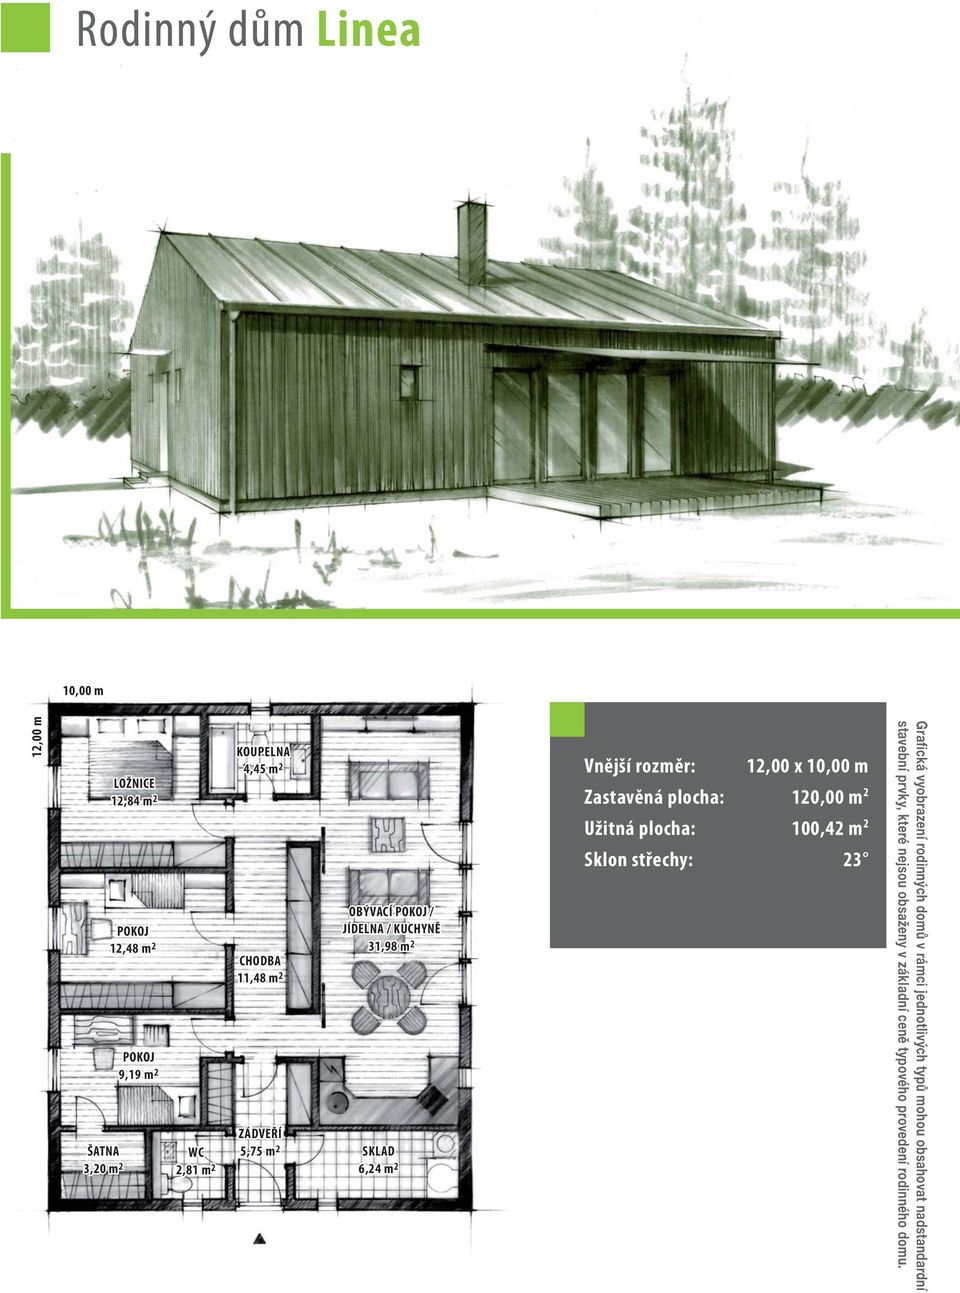 Zastavěná plocha: 120,00 m 2 Užitná plocha: 100,42 m 2 Sklon střechy: 23 Grafická vyobrazení rodinných domů v rámci